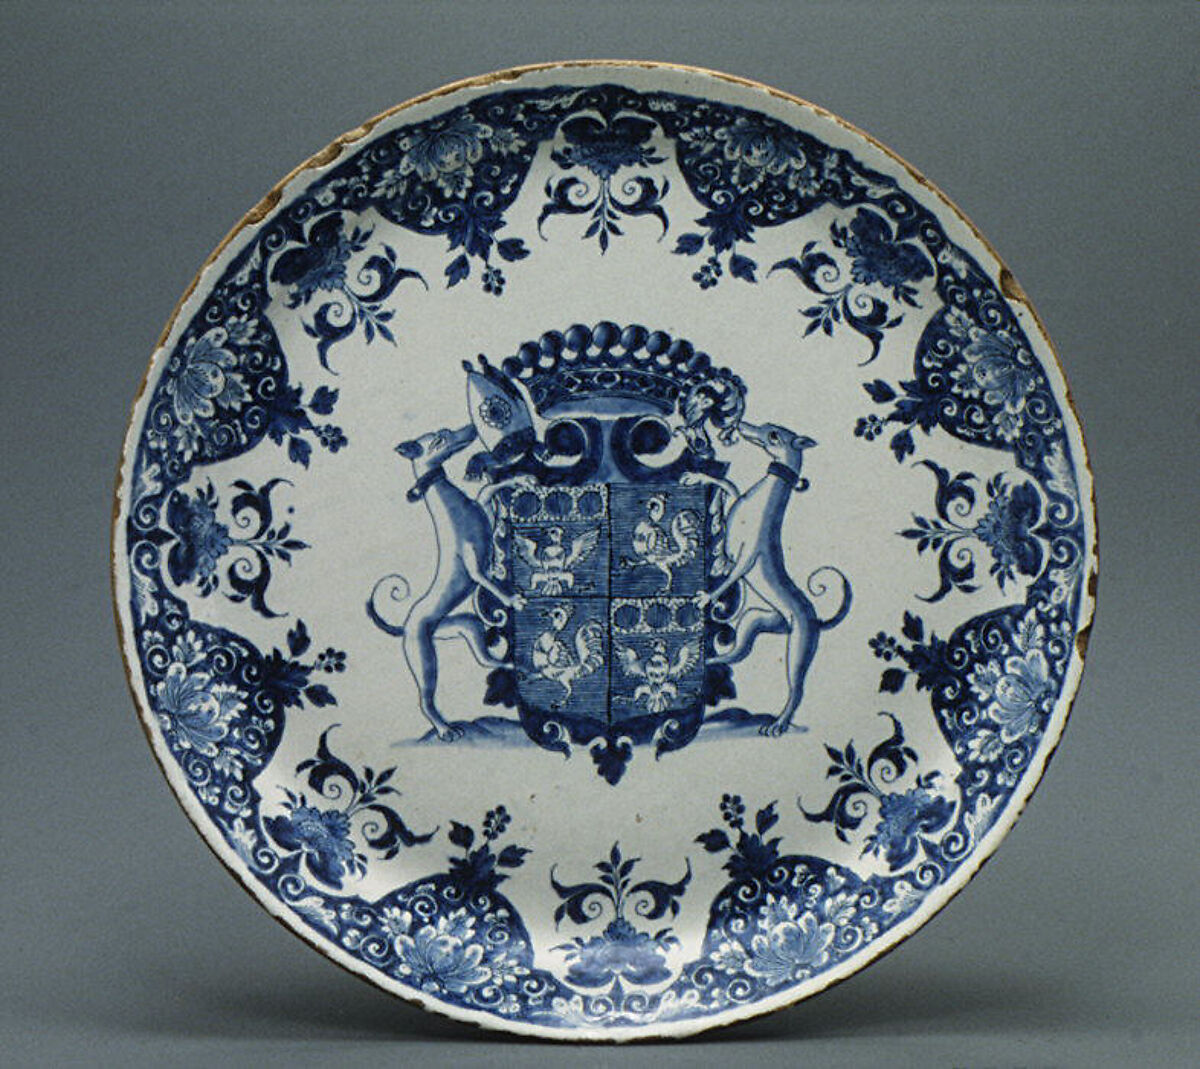 1700 1720. Французская роспись руанский фаянс. Китайский орнамент на посуде. Фарфор 1720 год. Руанский орнамент на фаянсе.